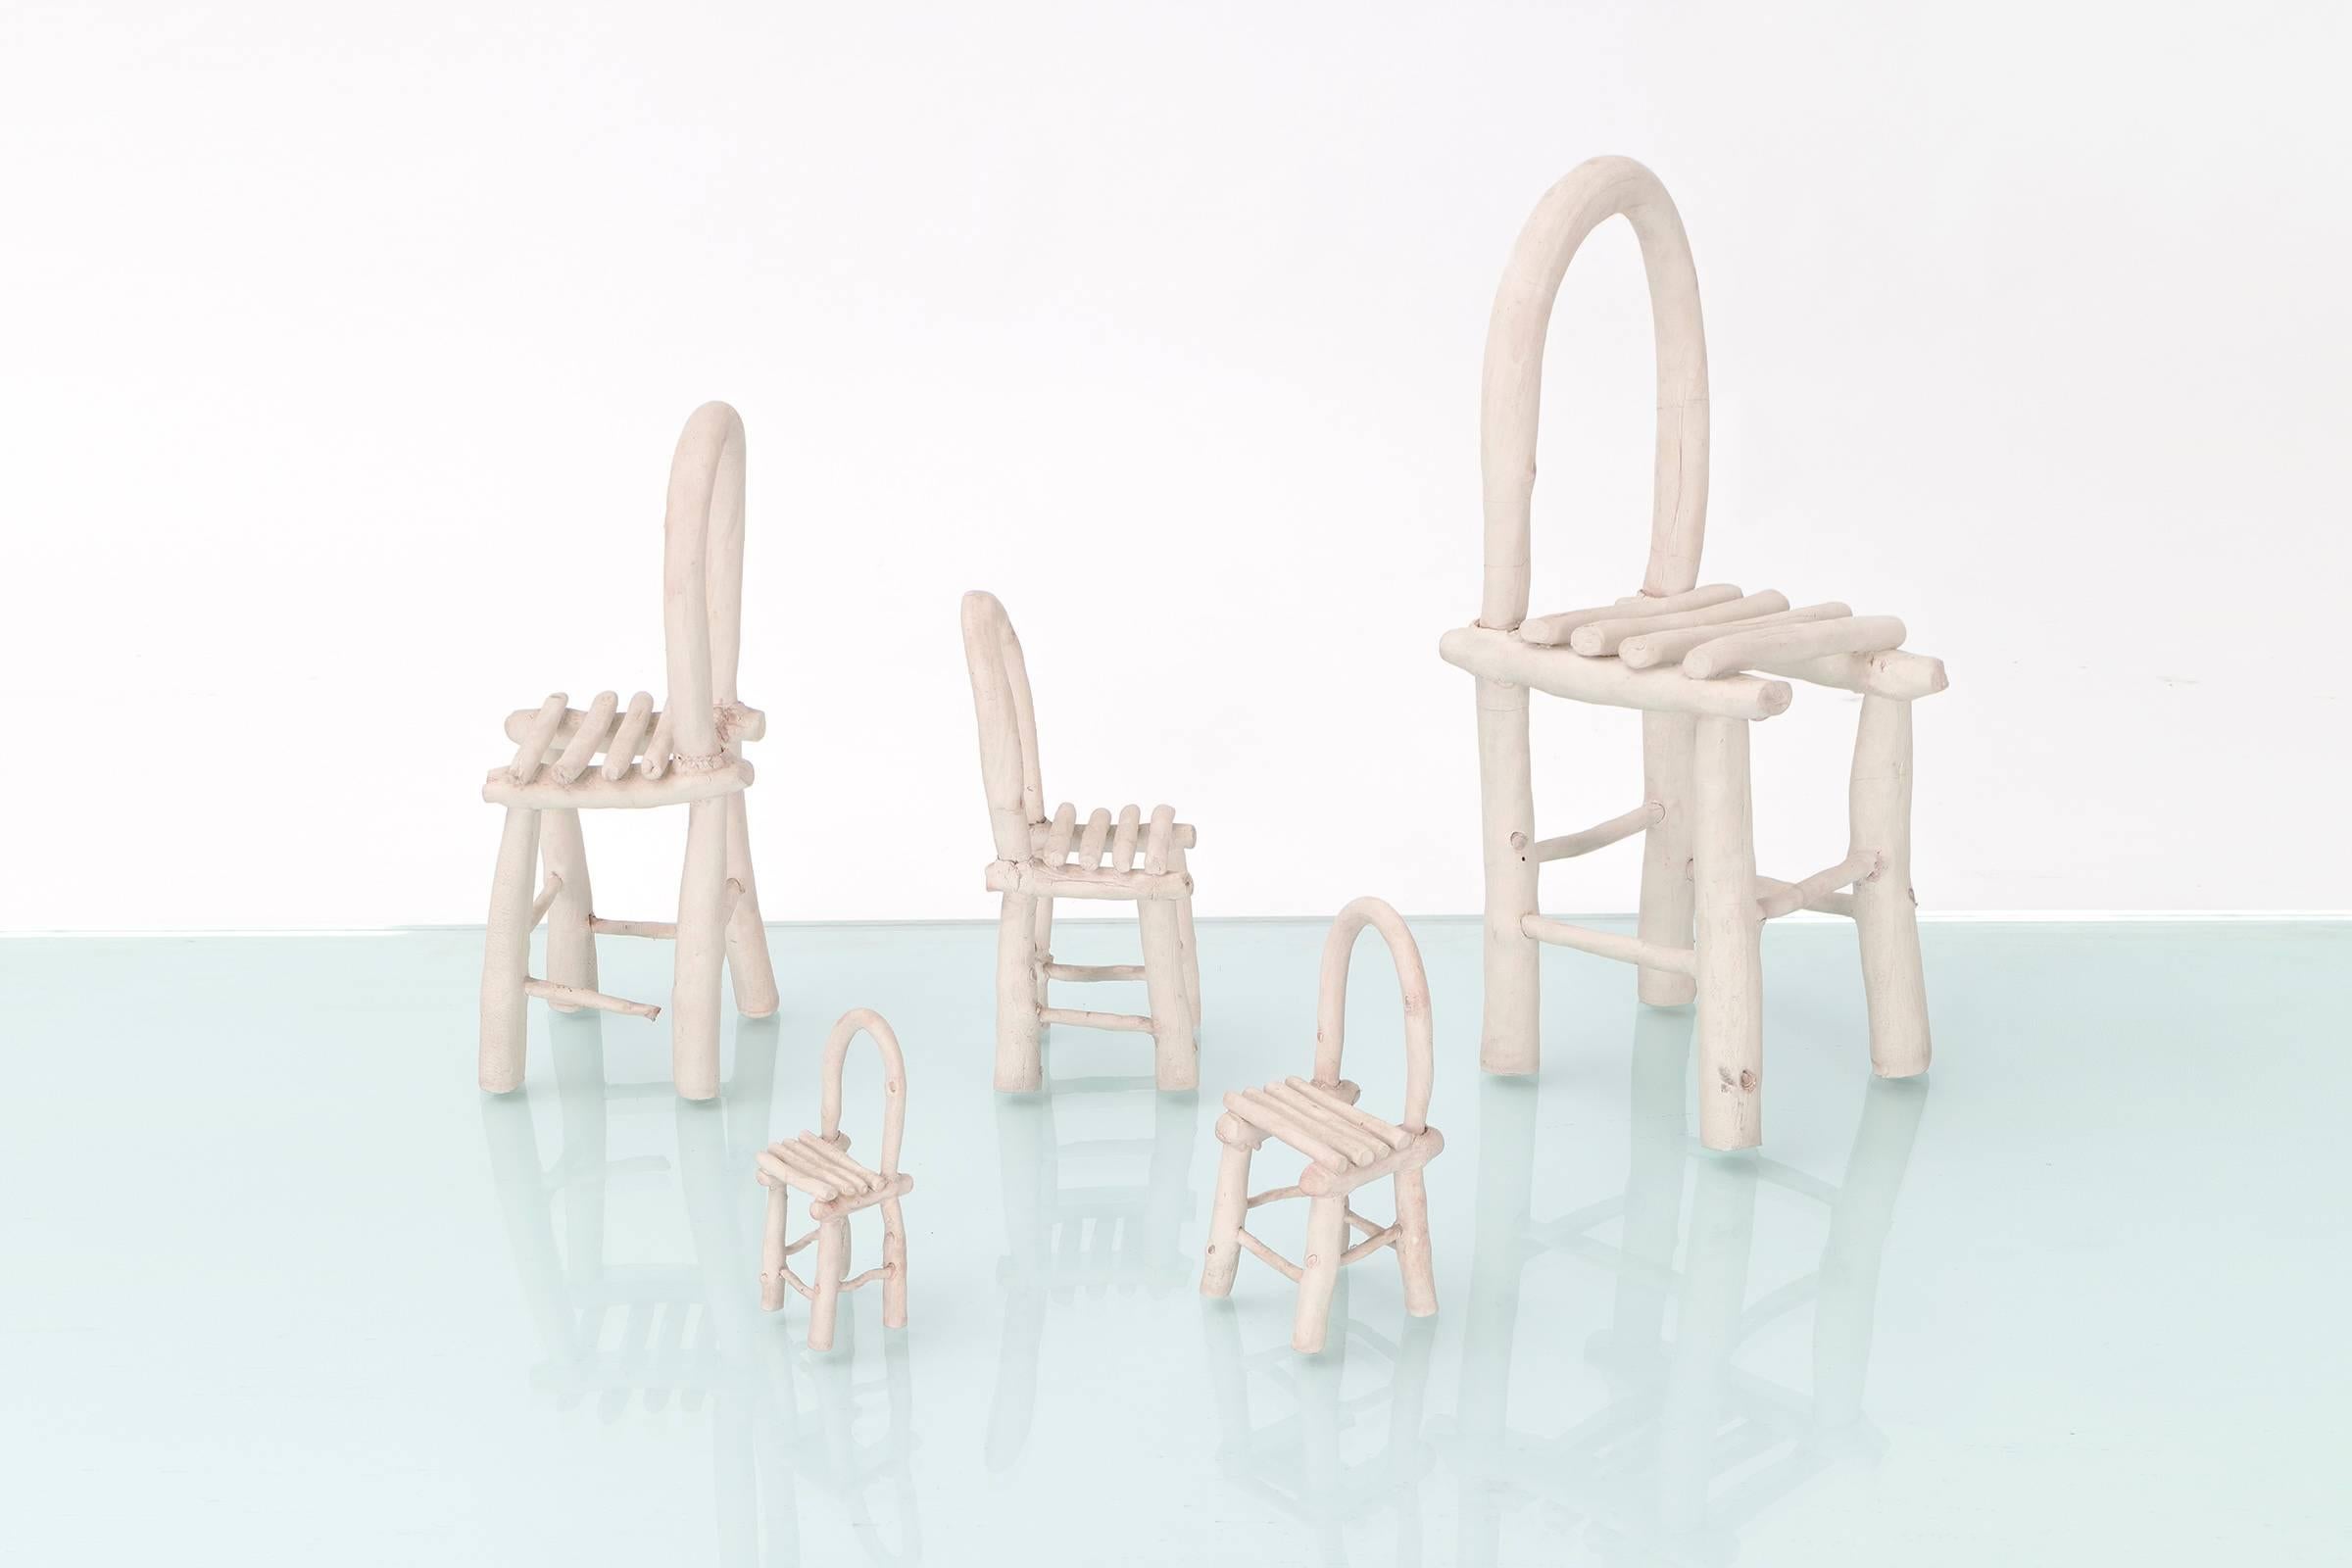 Ensemble de cinq chaises en céramique sculptées par l'artiste Linda Kramer, basée à Chicago. 

Mesures : Hauteurs des chaises : 5.5